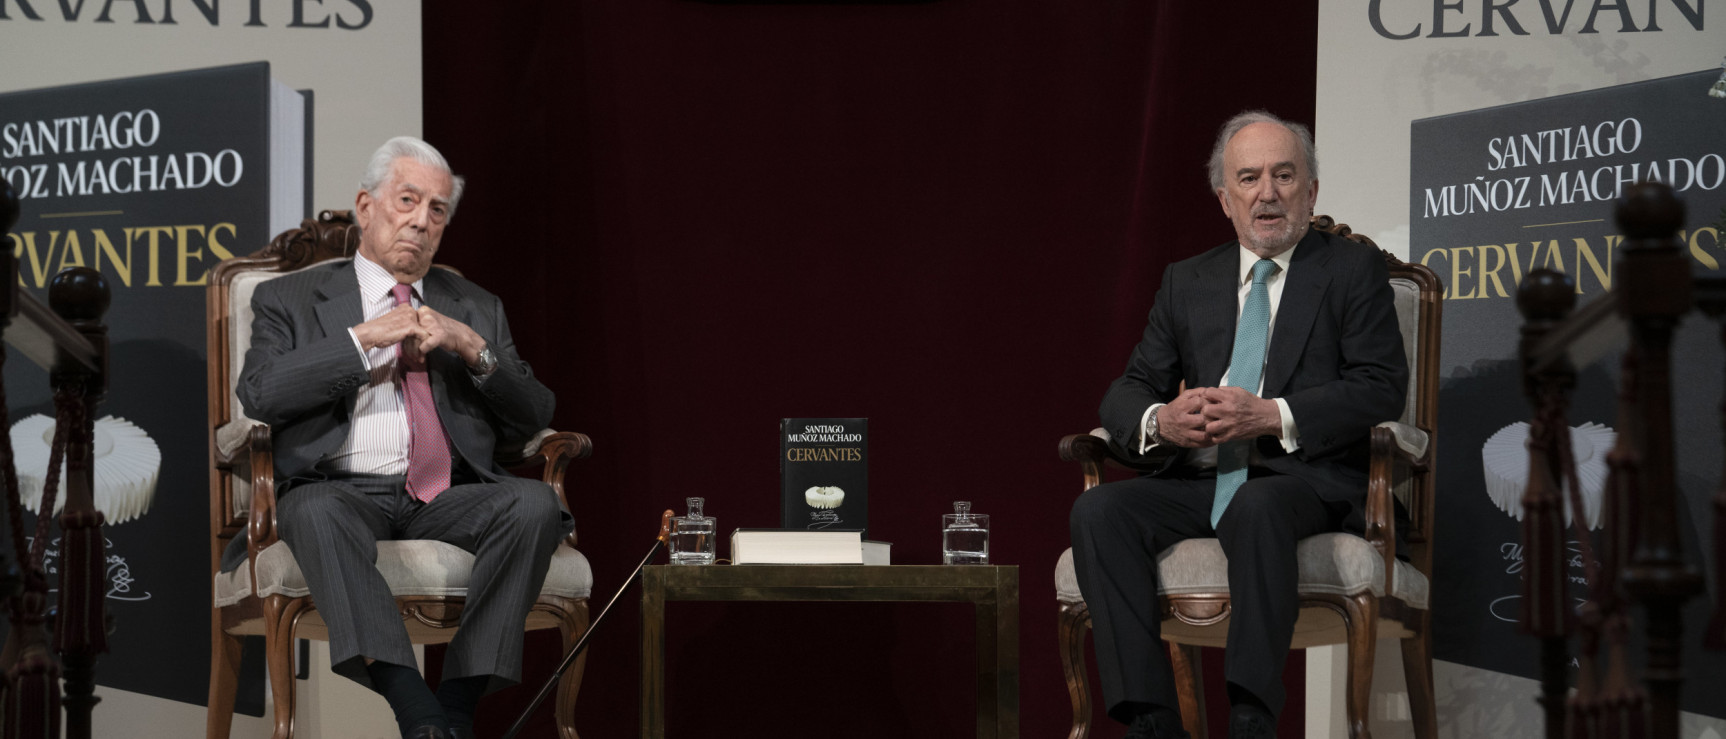 Mario Vargas Llosa y Santiago Muñoz Machado (foto: RAE)